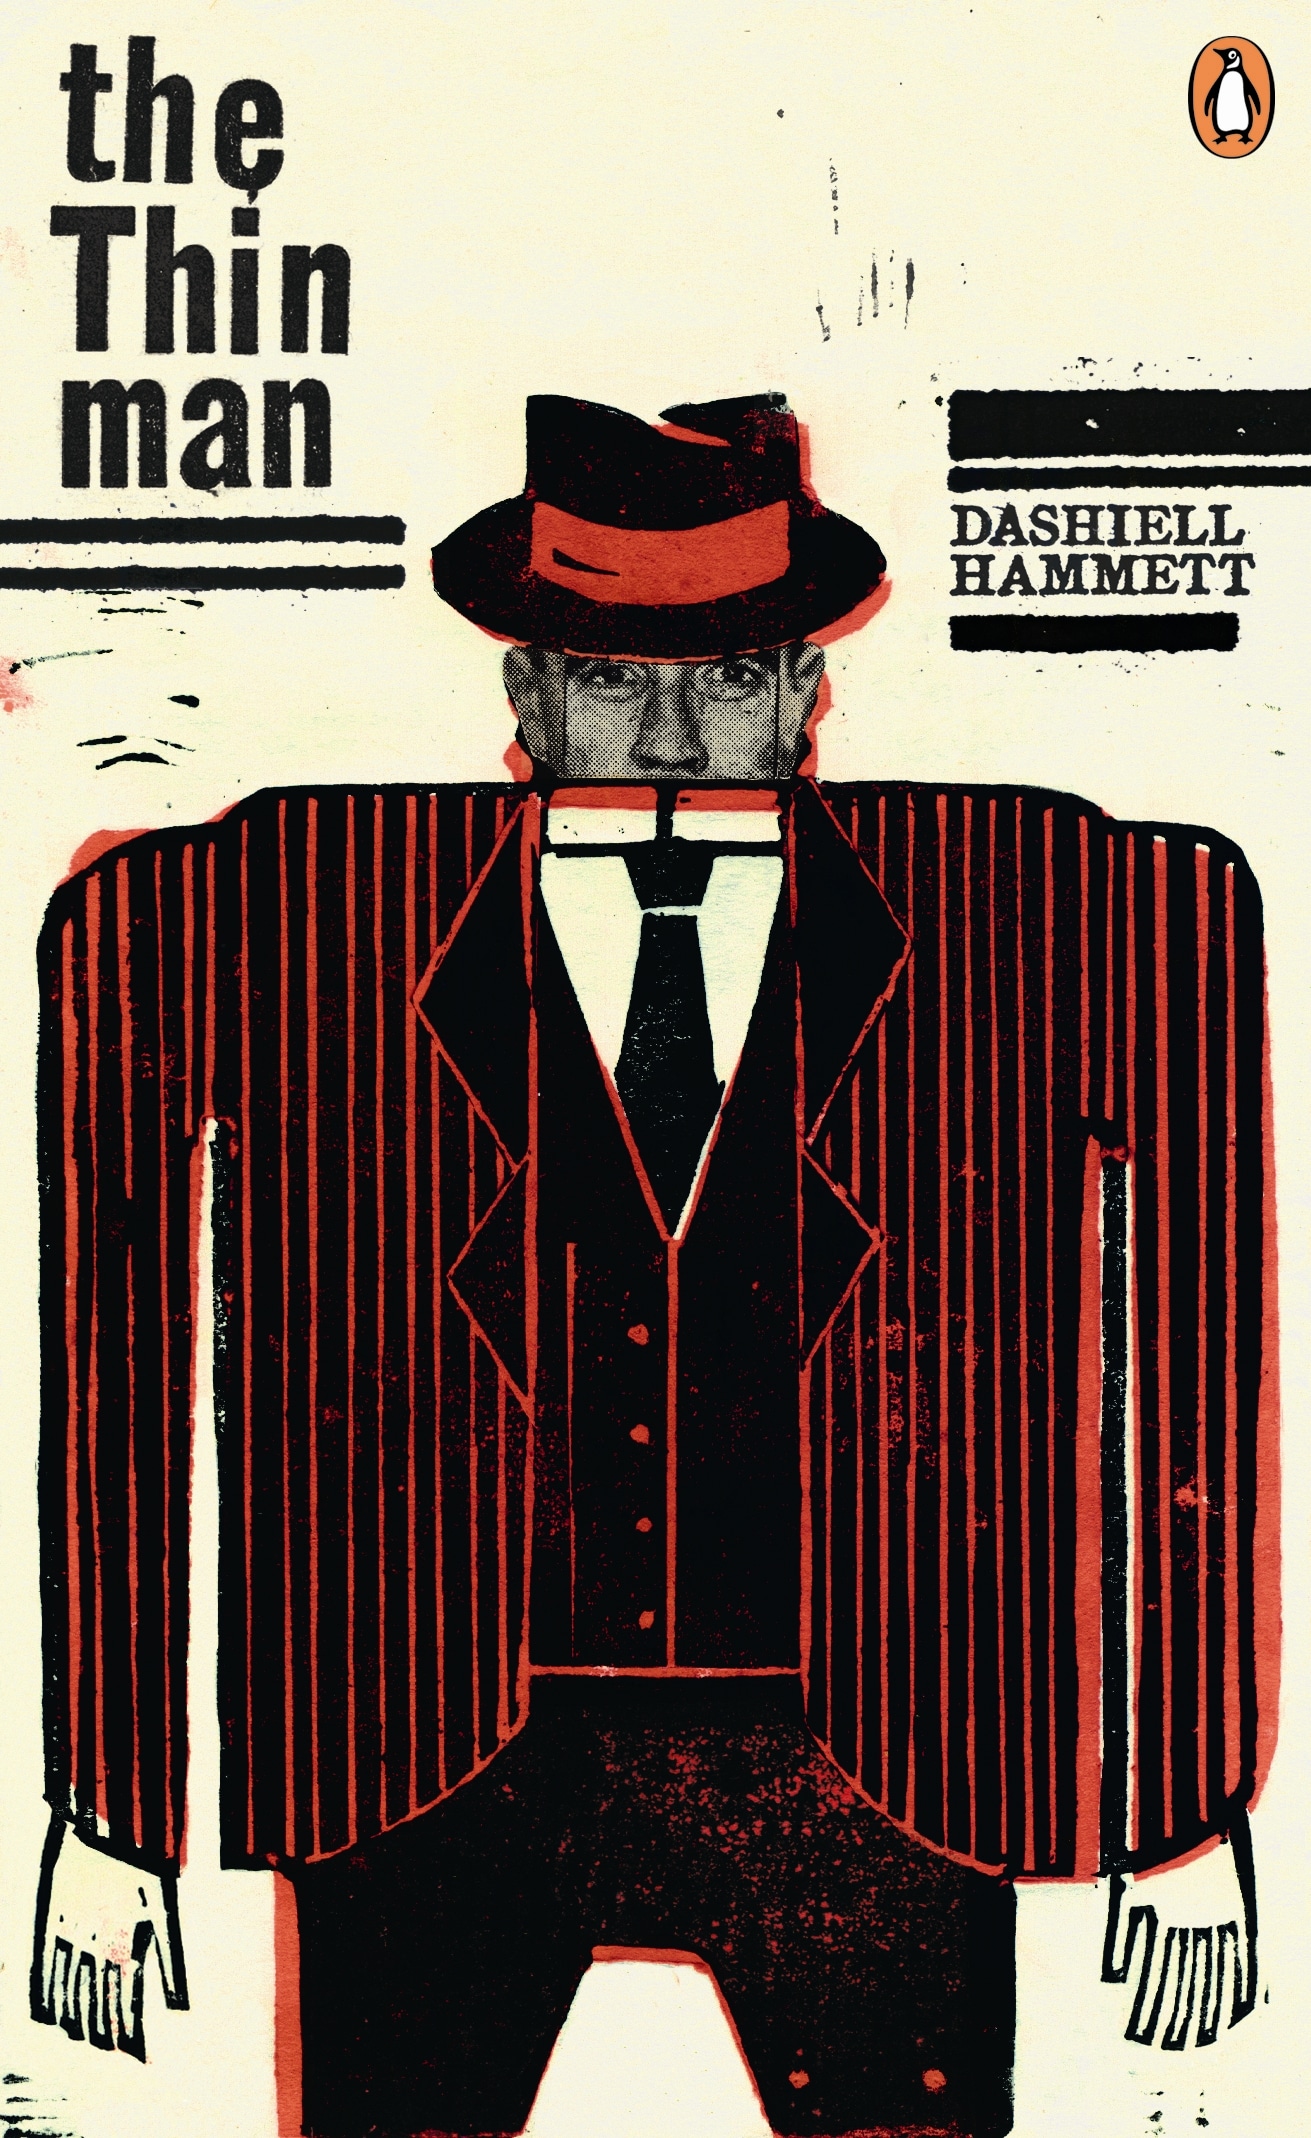 Book “The Thin Man” by Dashiell Hammett — April 5, 2012